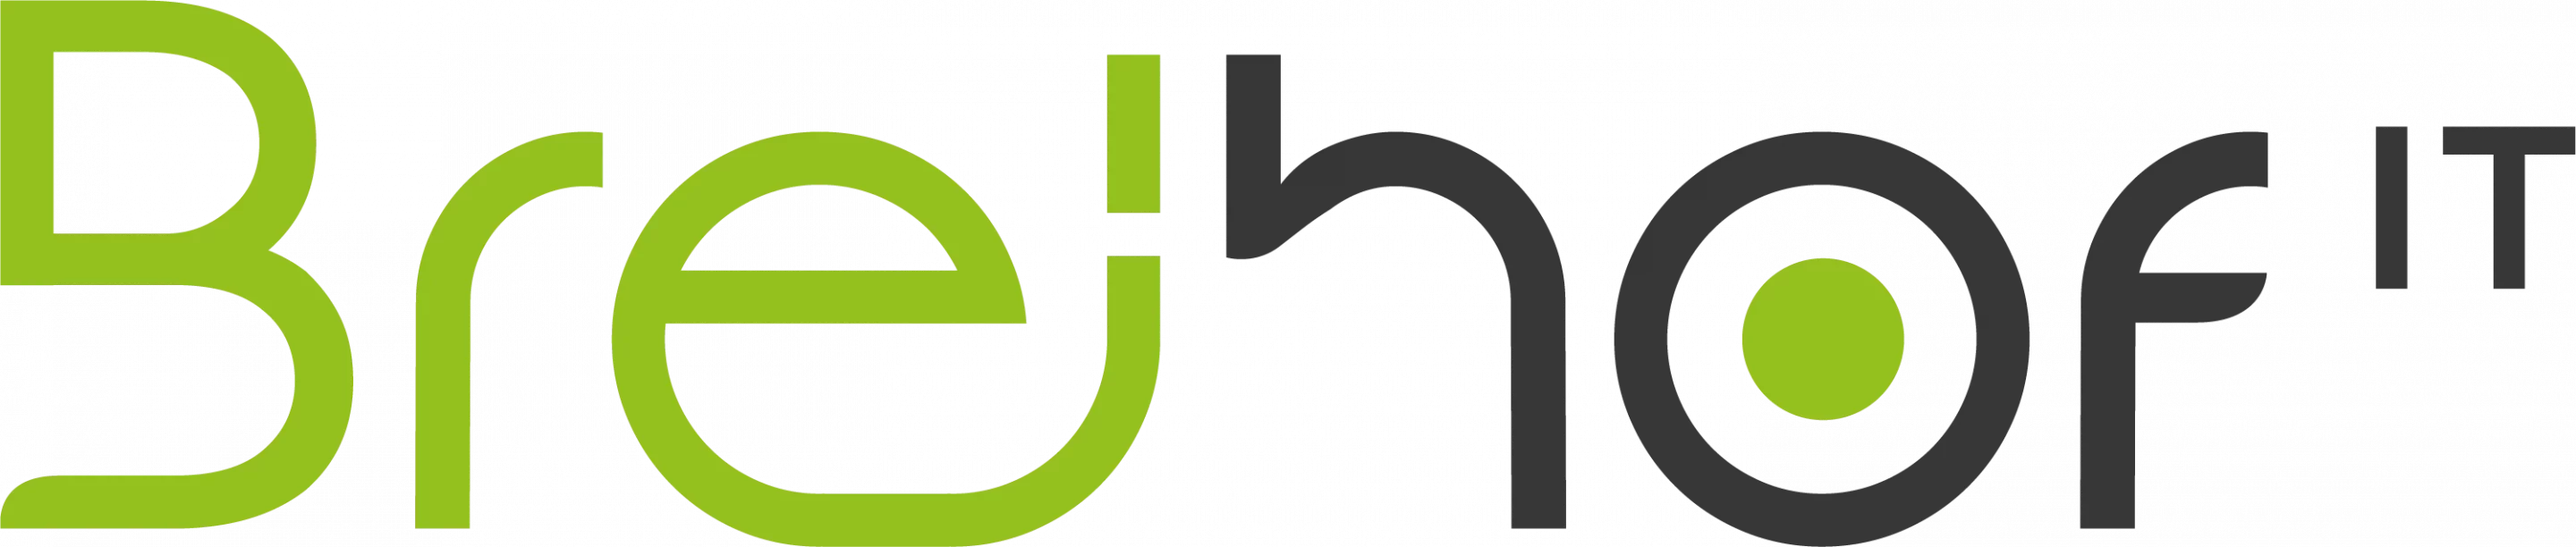 Breihof IT Logo